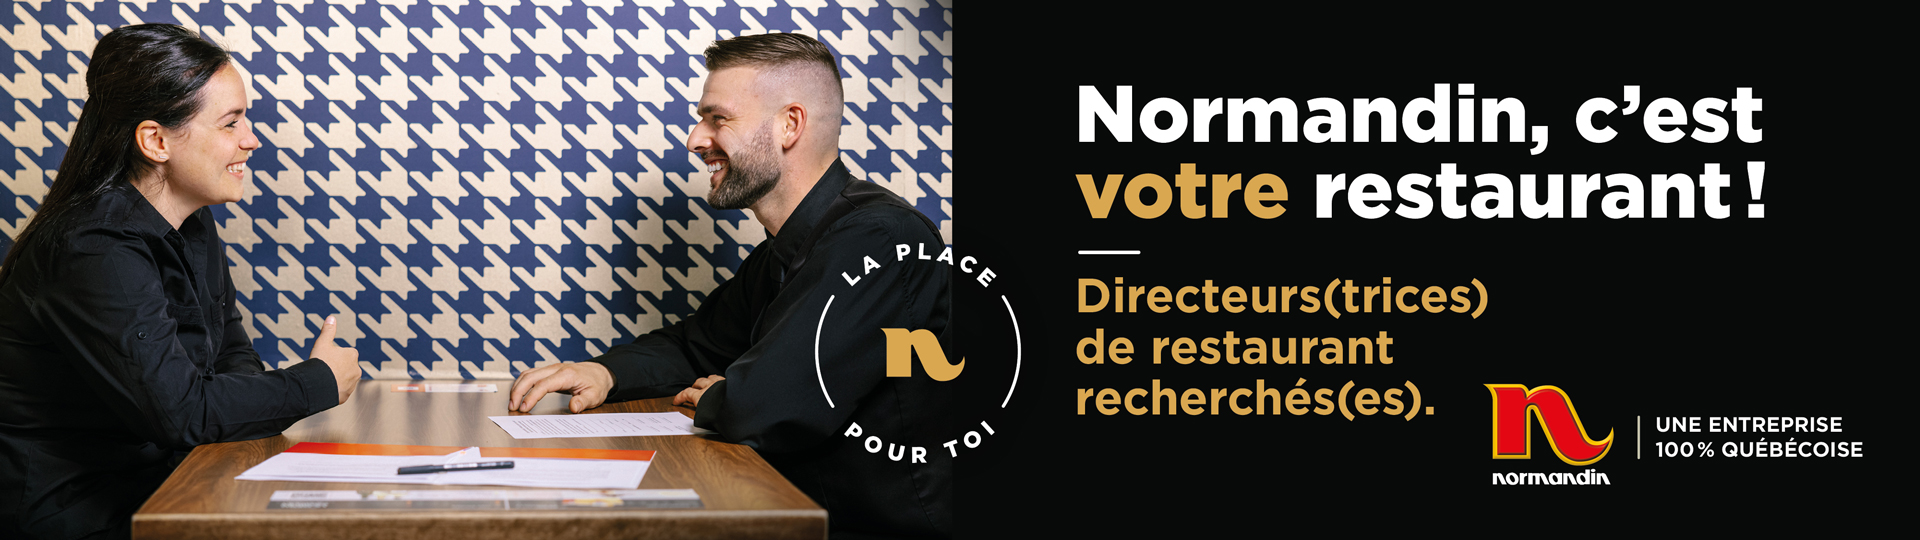 Normandin - La place pour toi - Directeurs(trices) de restaurant recherchés(es)